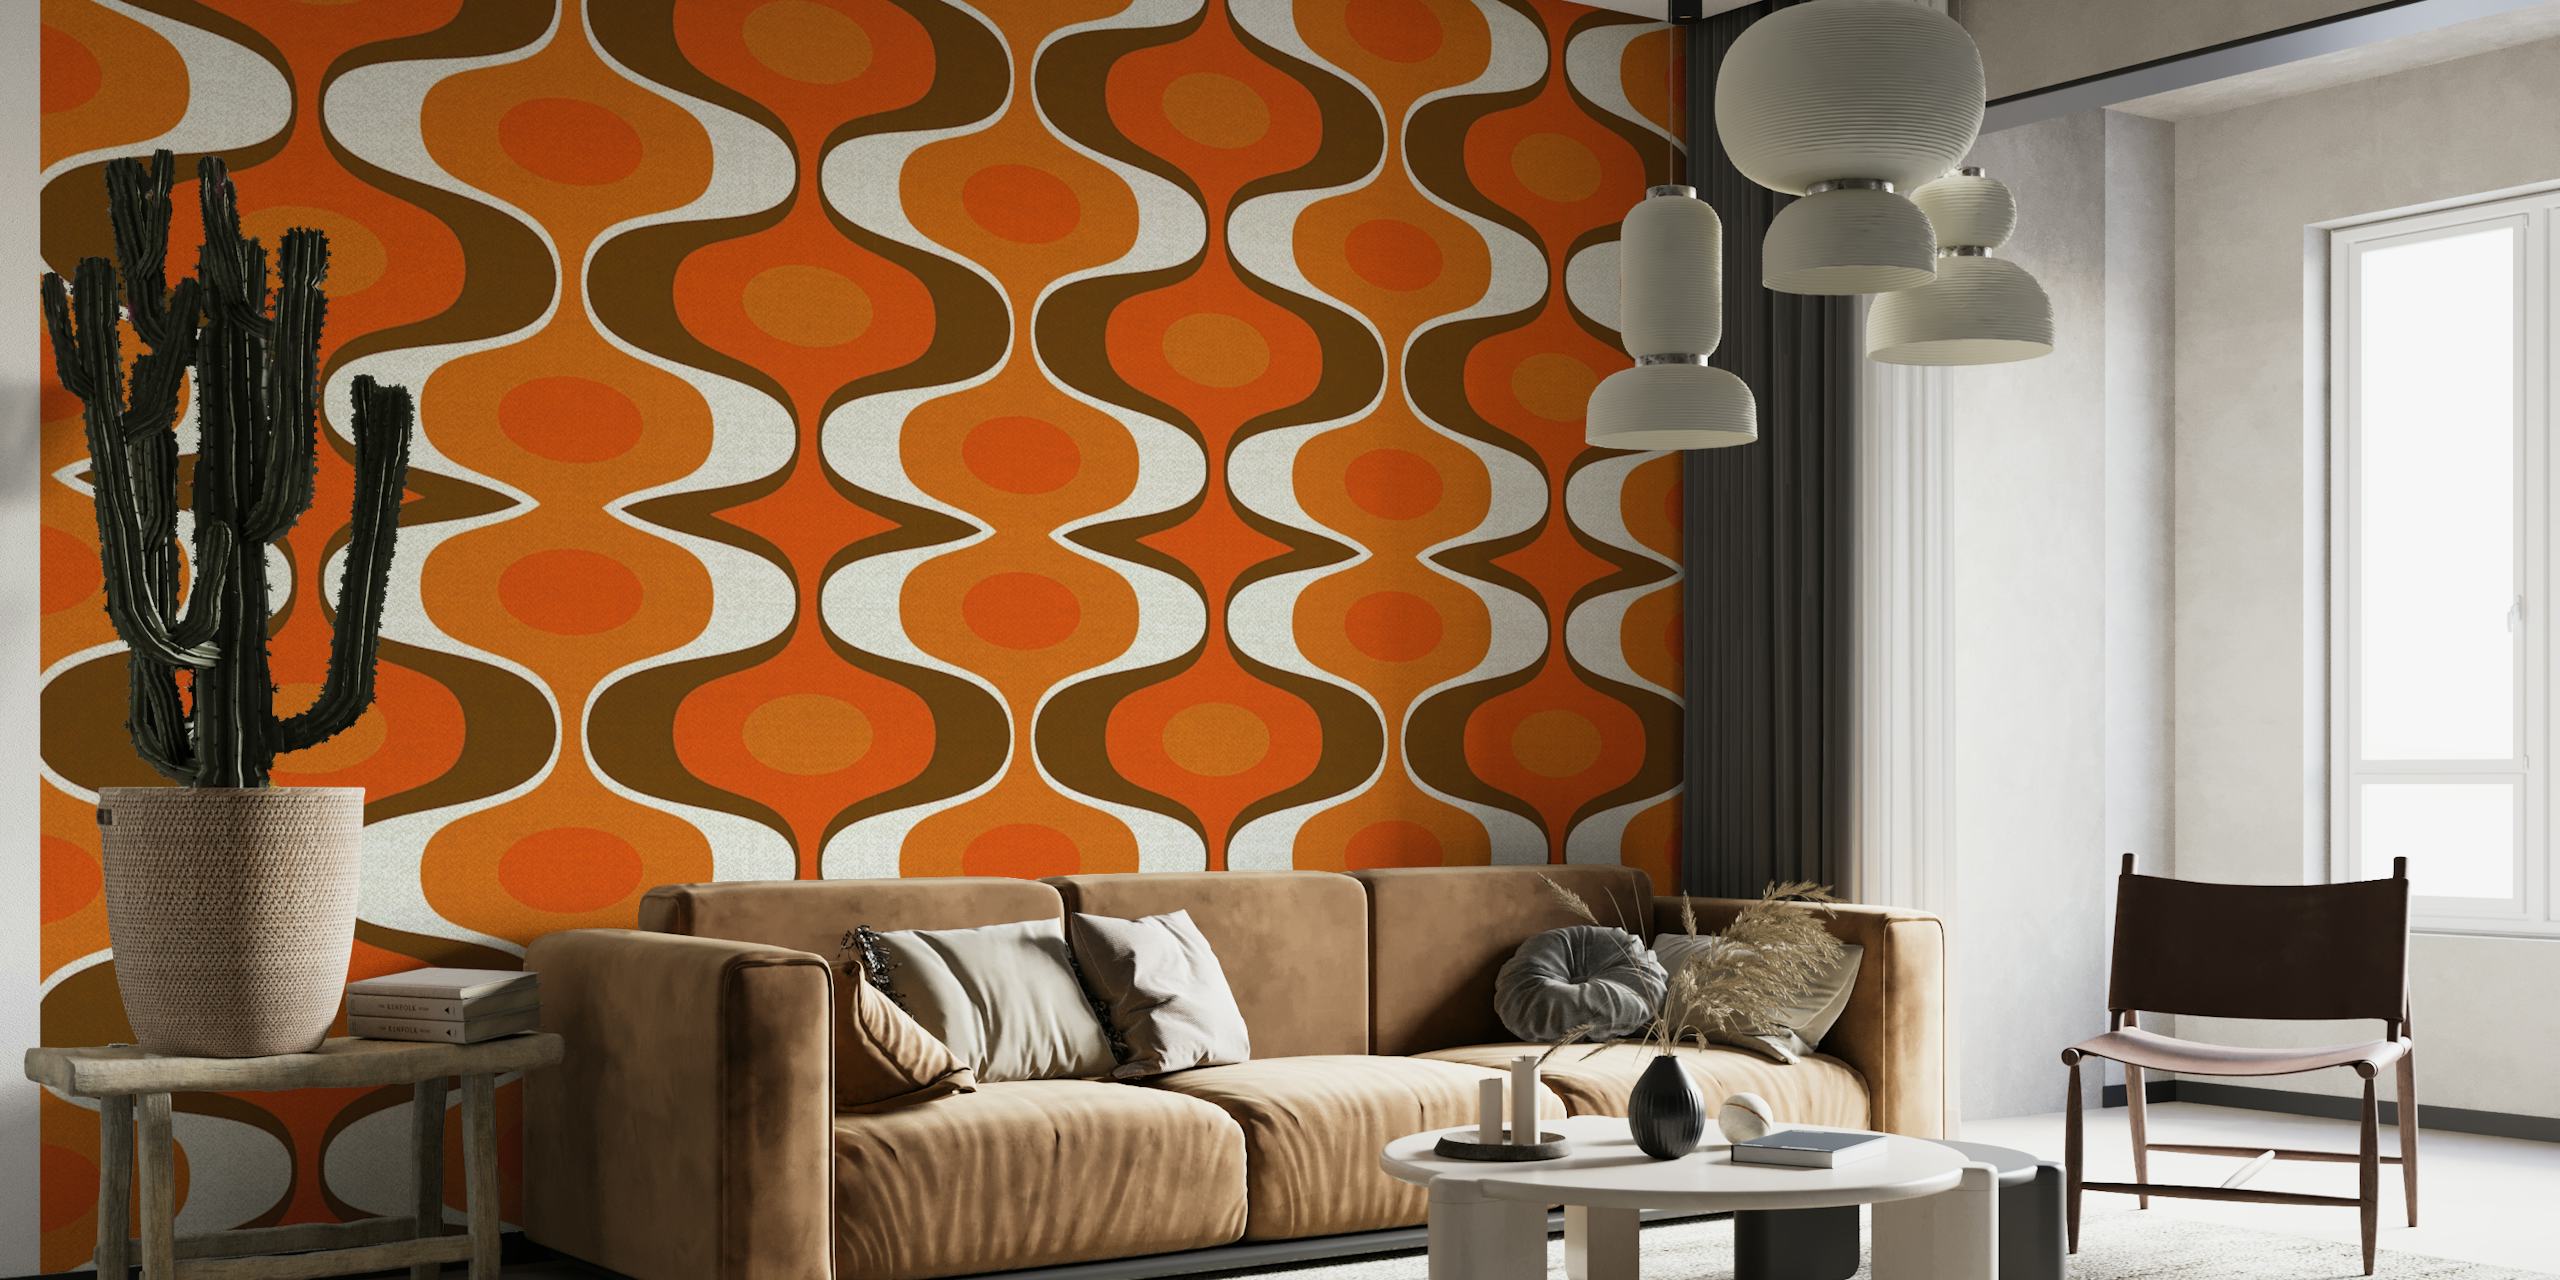 Vintageinspirerad tapet med 70-tals retro groovy mönster i orange och bruna färger.